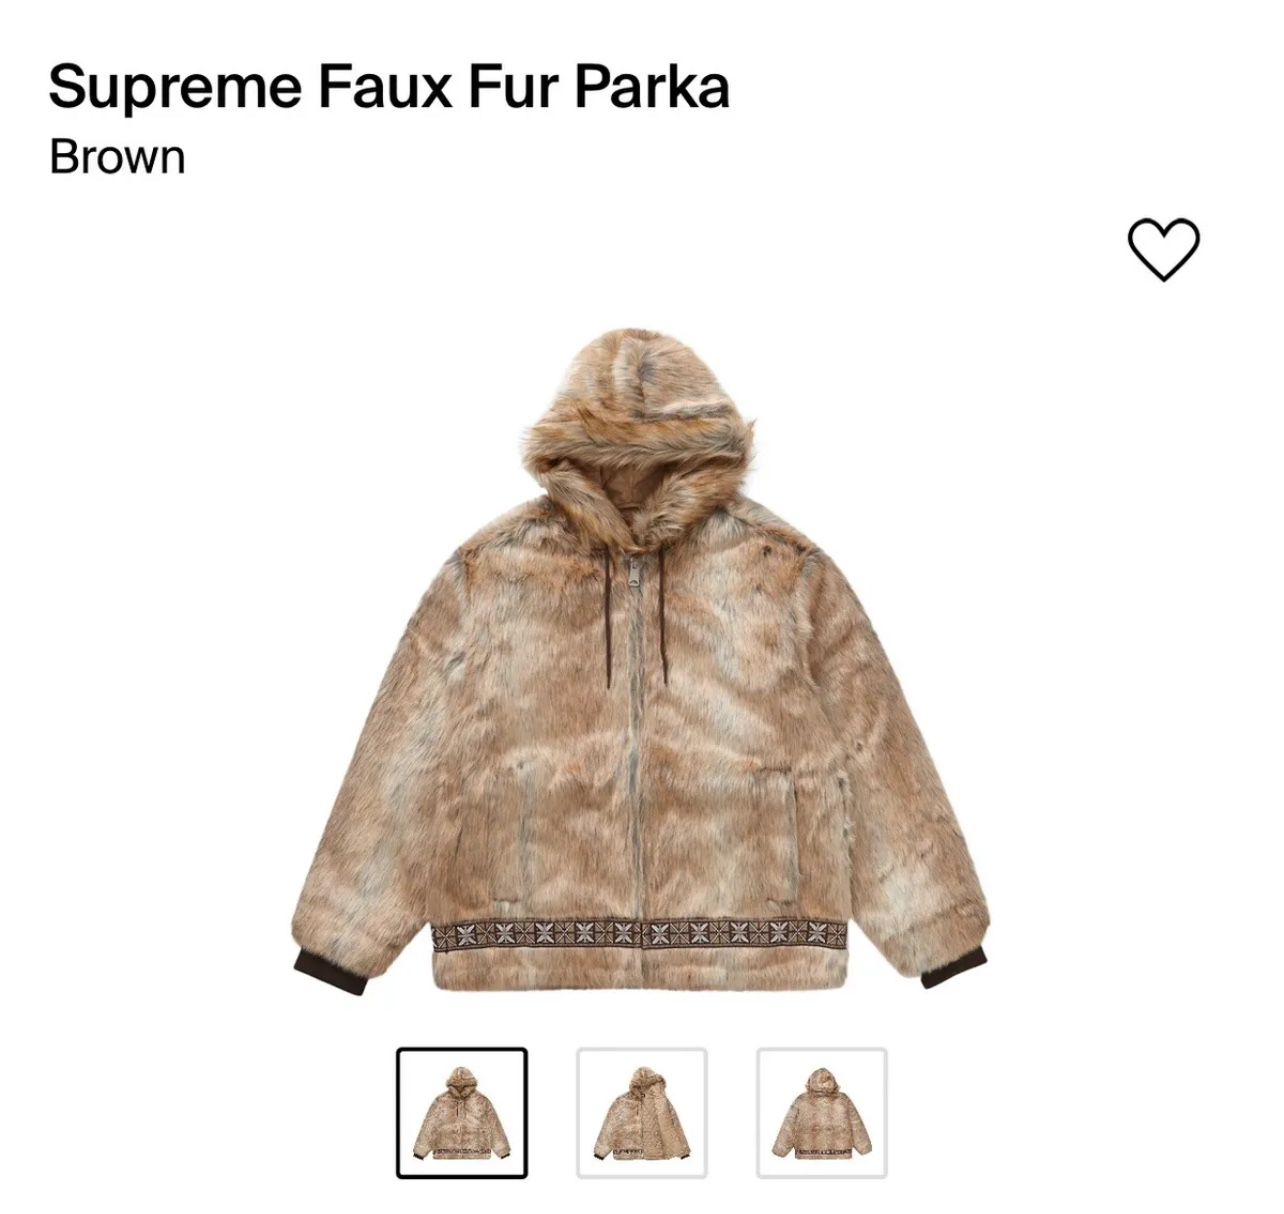 Supreme Faux Fur Parka Brown (size XL)